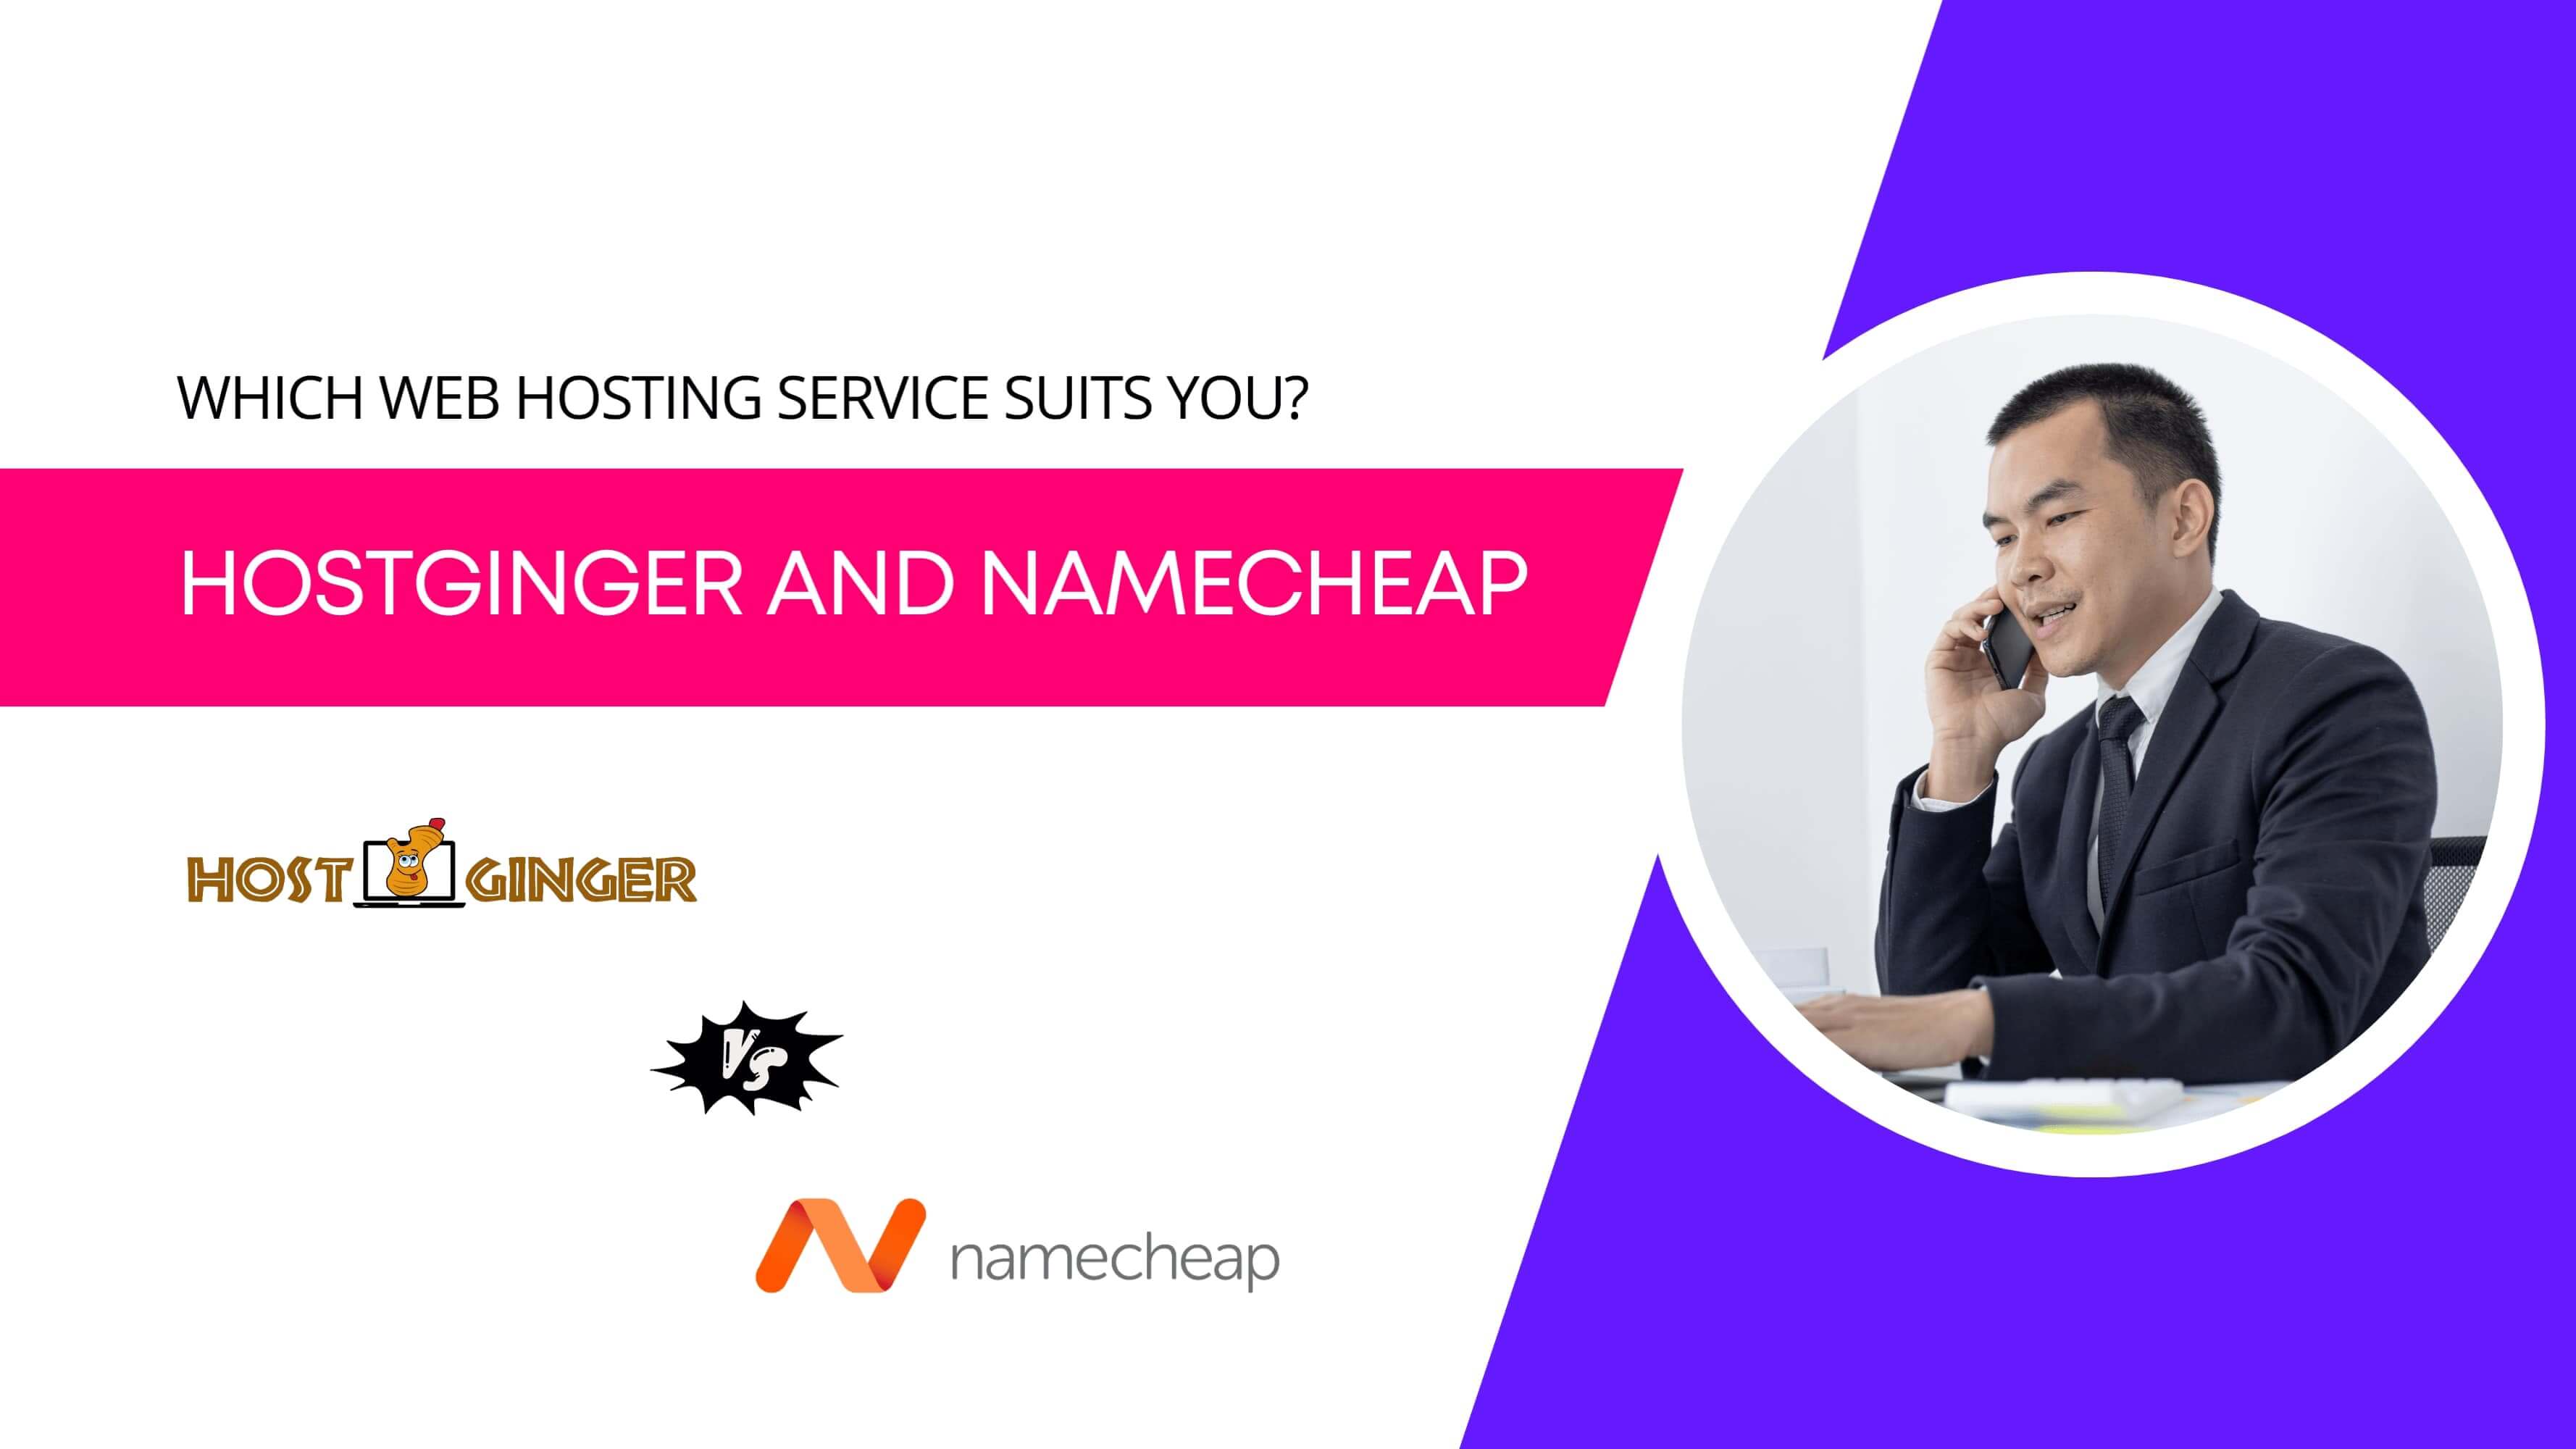 Comparing Hosting Prices: Hostginger vs Namecheap